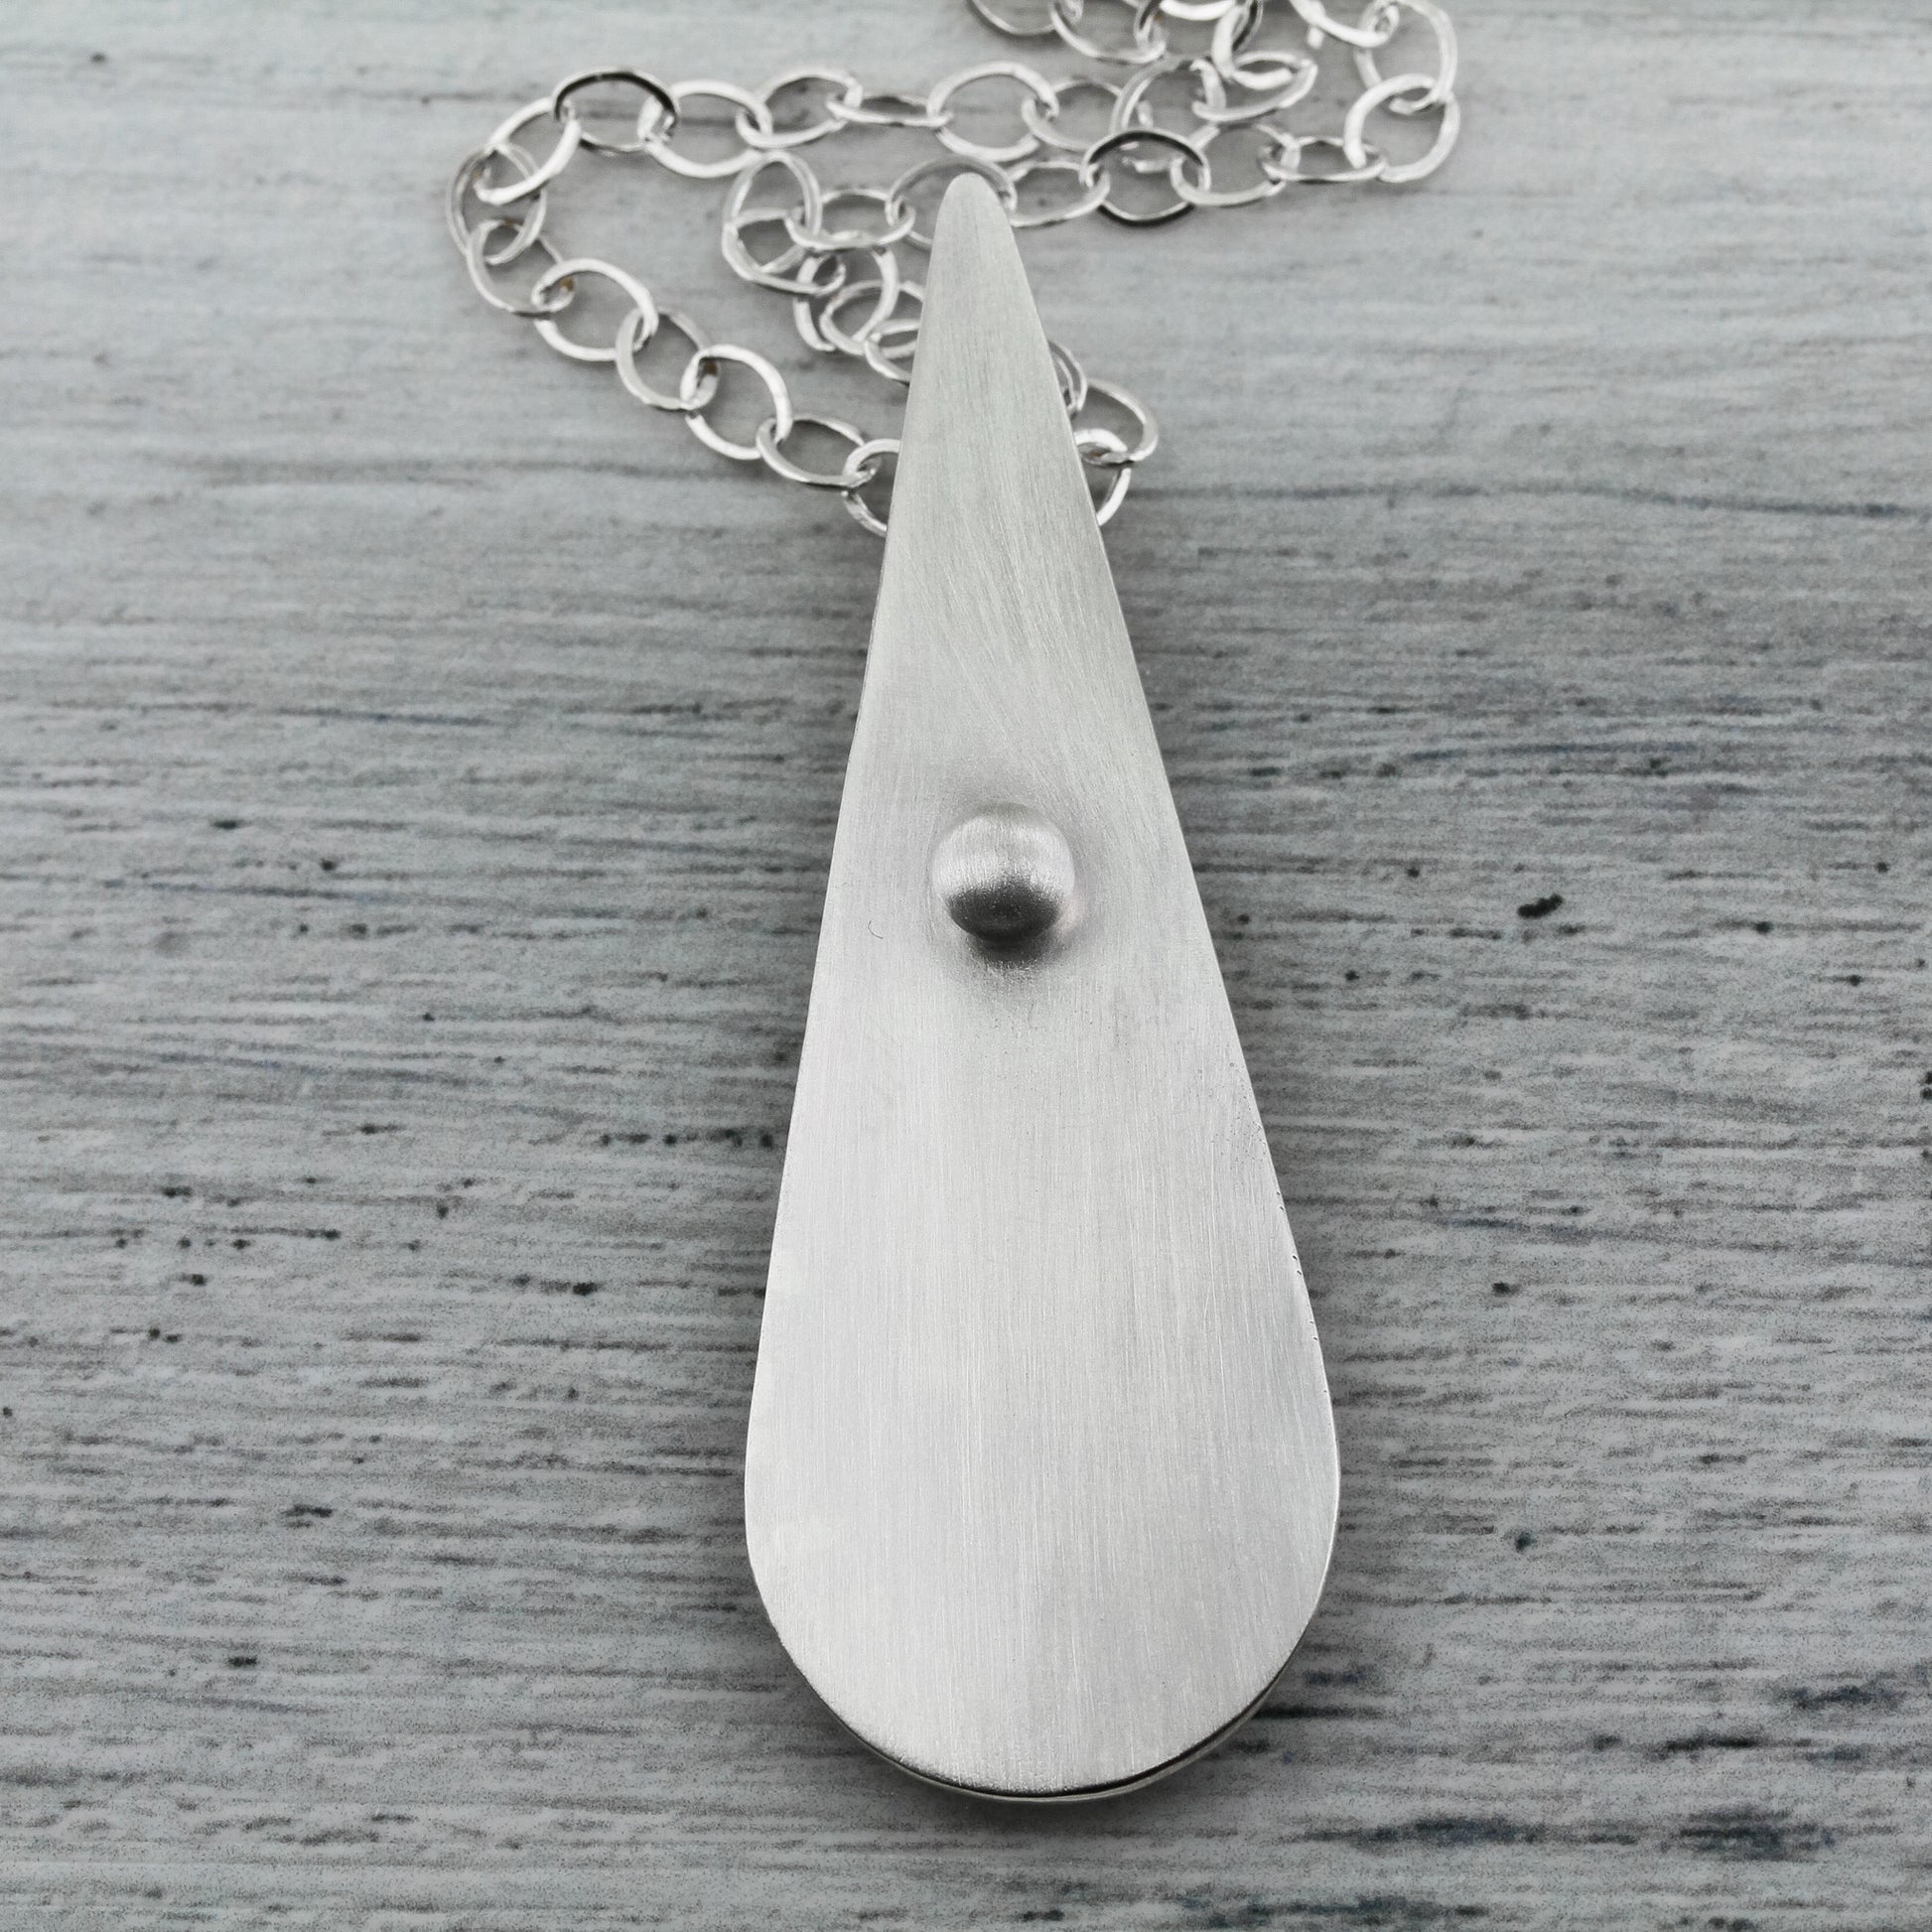 Minimalist sterling silver teardrop shaped necklace